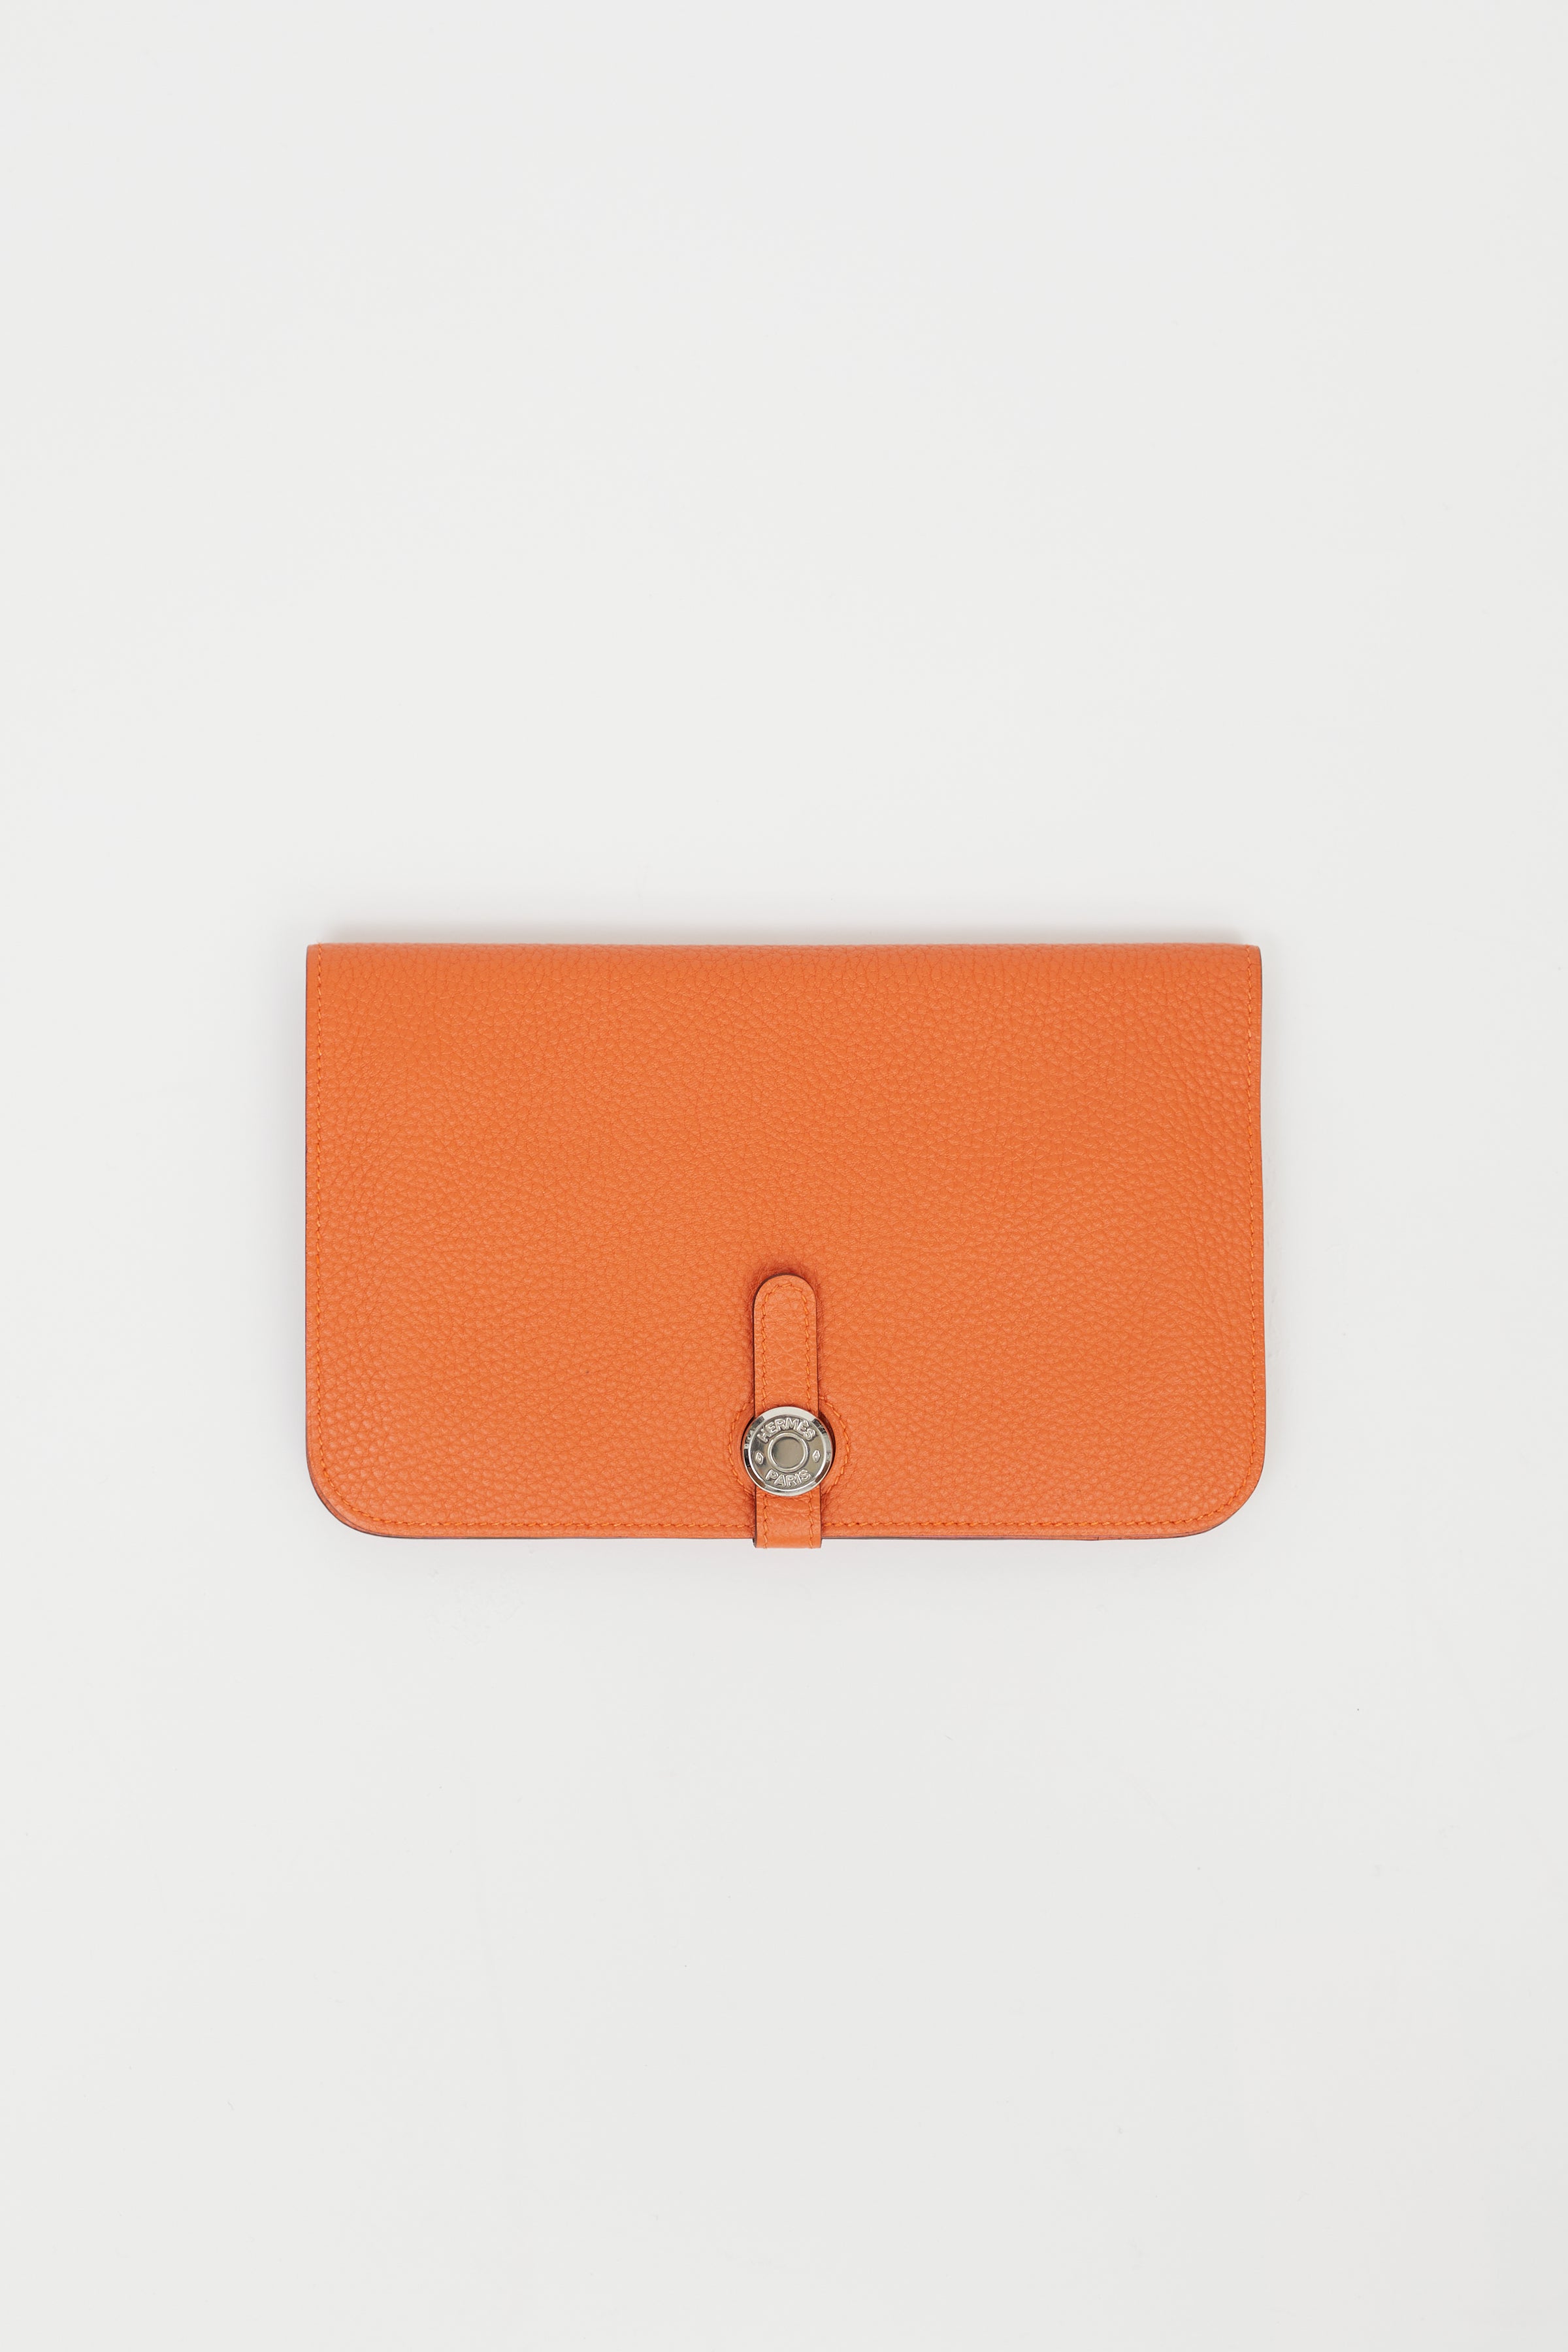 Hermes Orange Leather Dogon Wallet Hermes